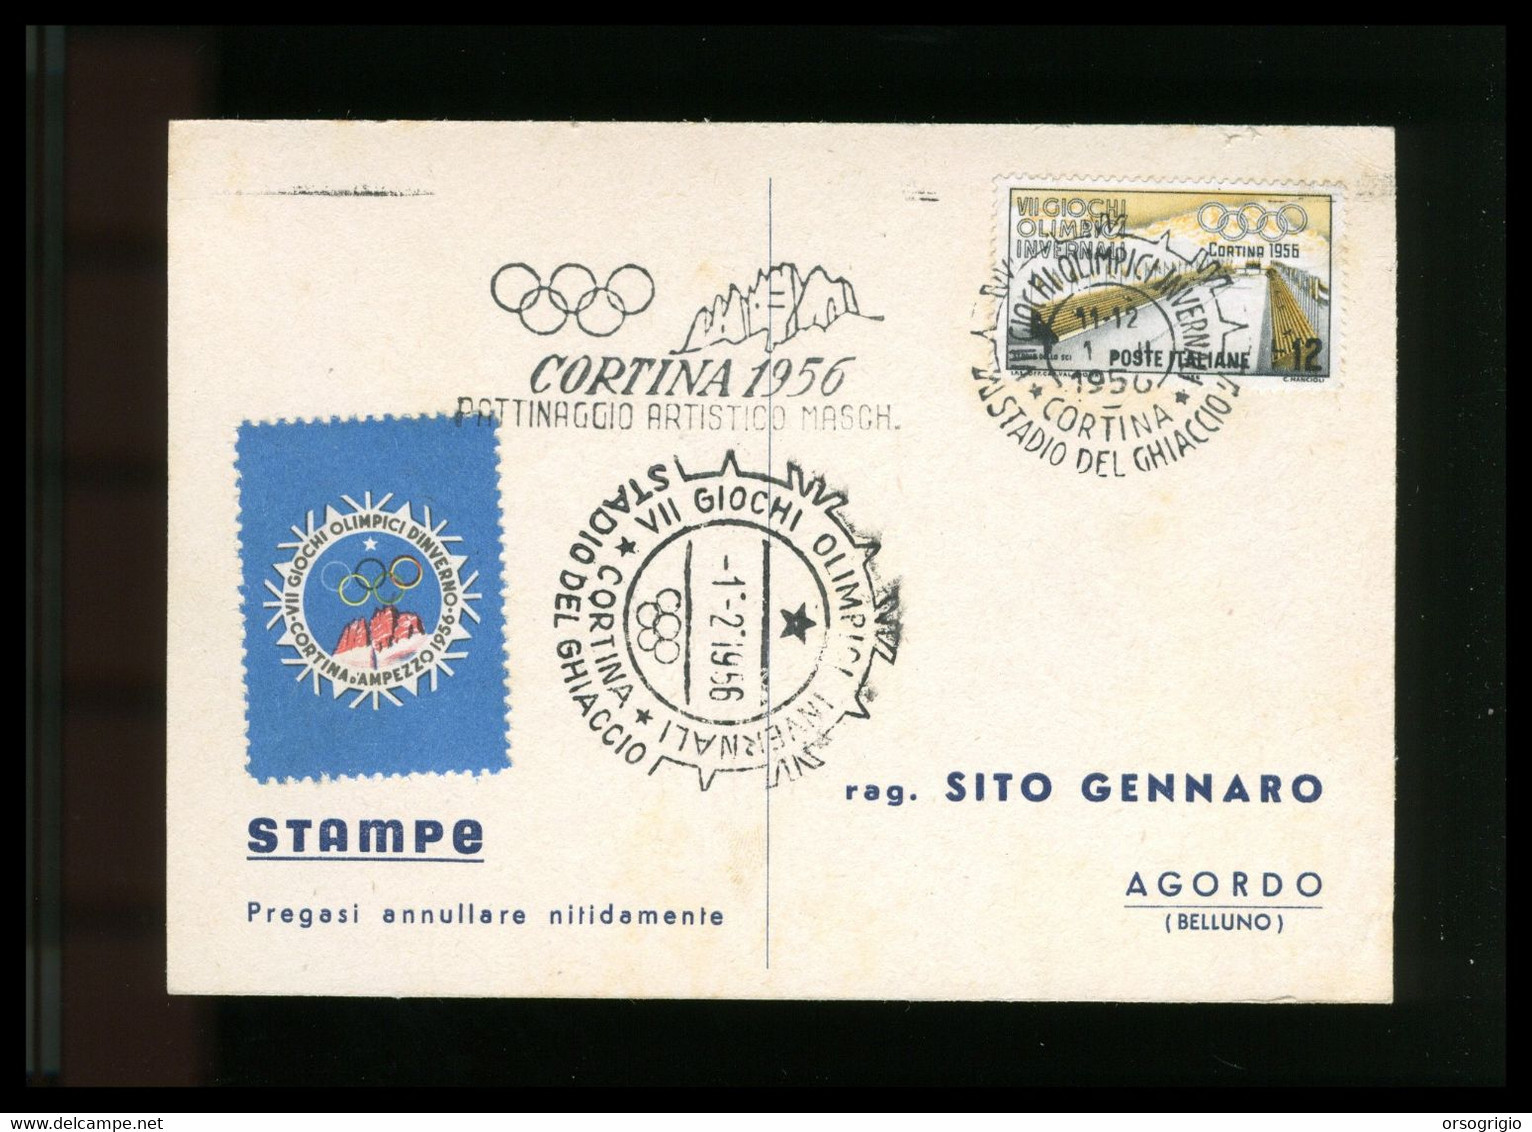 ITALIA - 1956 GIOCHI OLIMPICI INVERNALI Di CORTINA D'AMPEZZO - PATTINAGGIO ARTISTICO MASCHILE -  1-2-1956    LUSSO - Inverno1956: Cortina D'Ampezzo